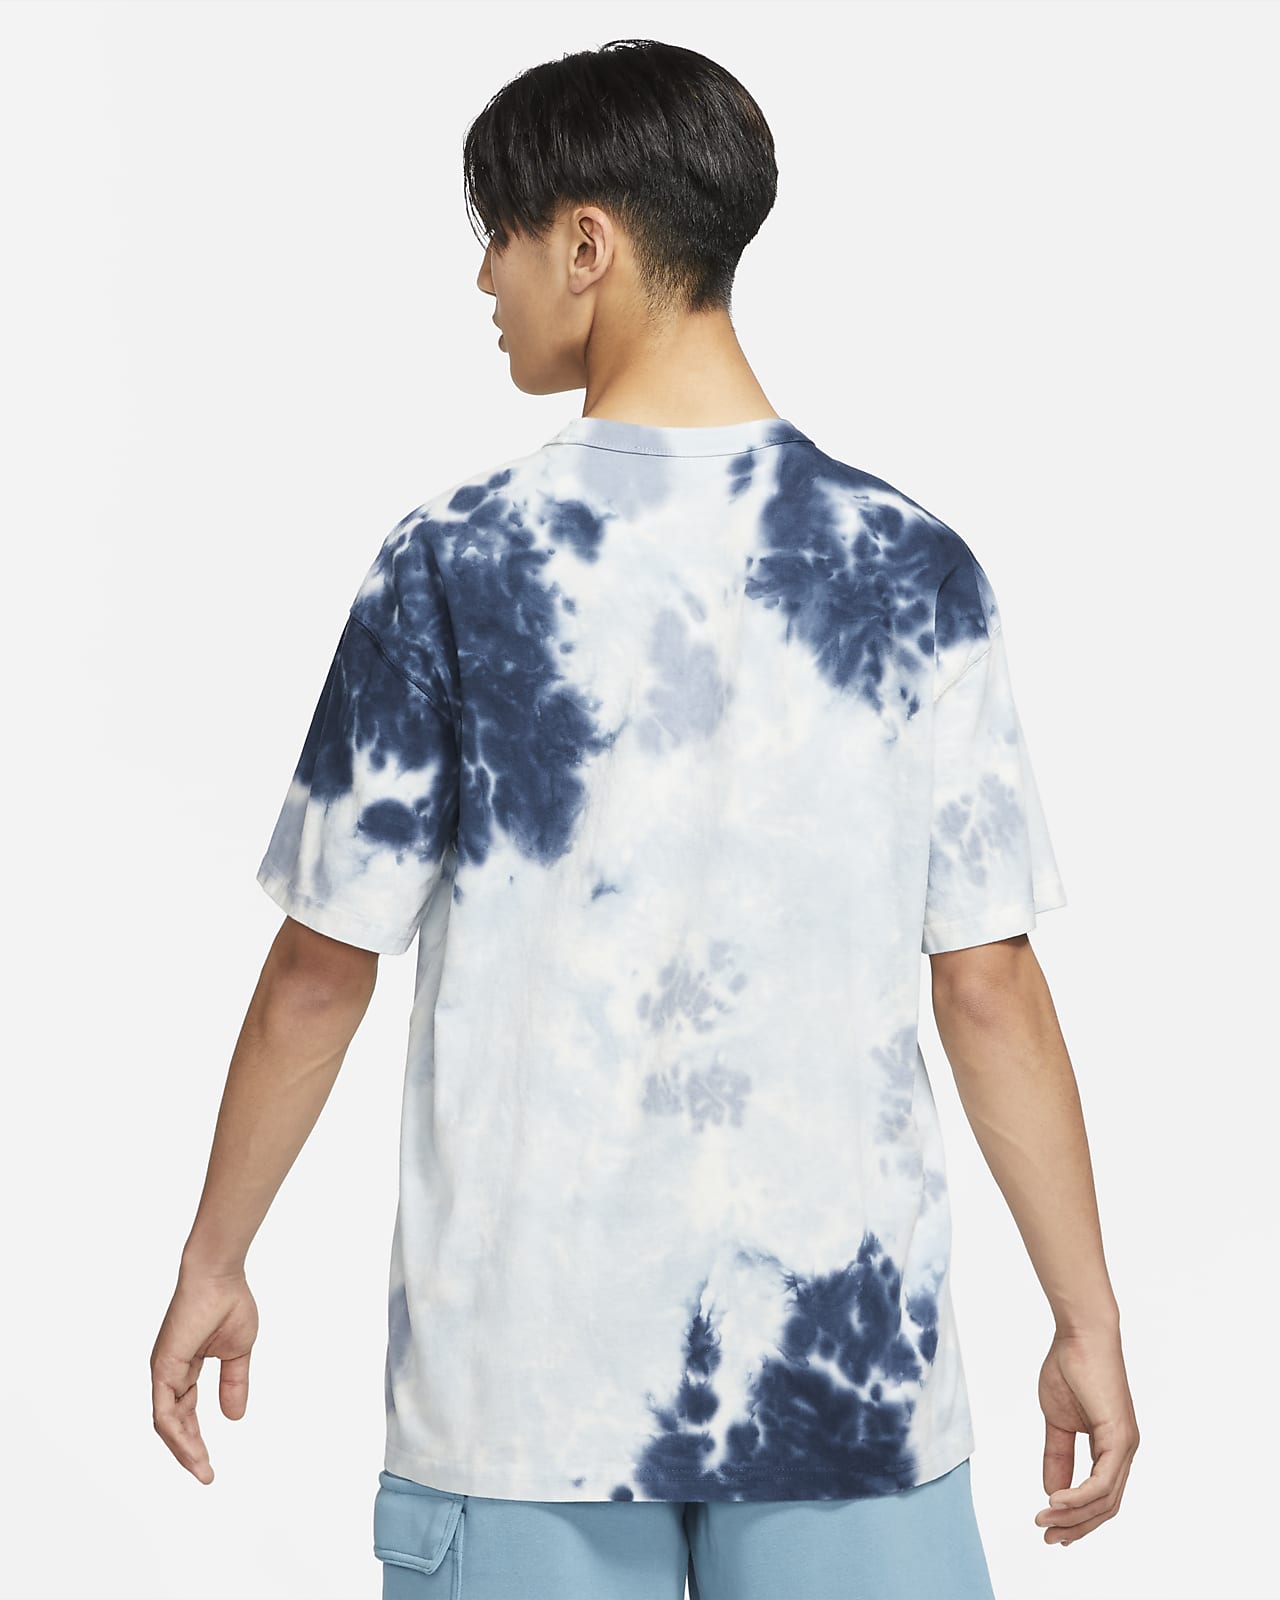 Nike Sportswear Premium Essentials Men's Tie-Dye T-Shirt.